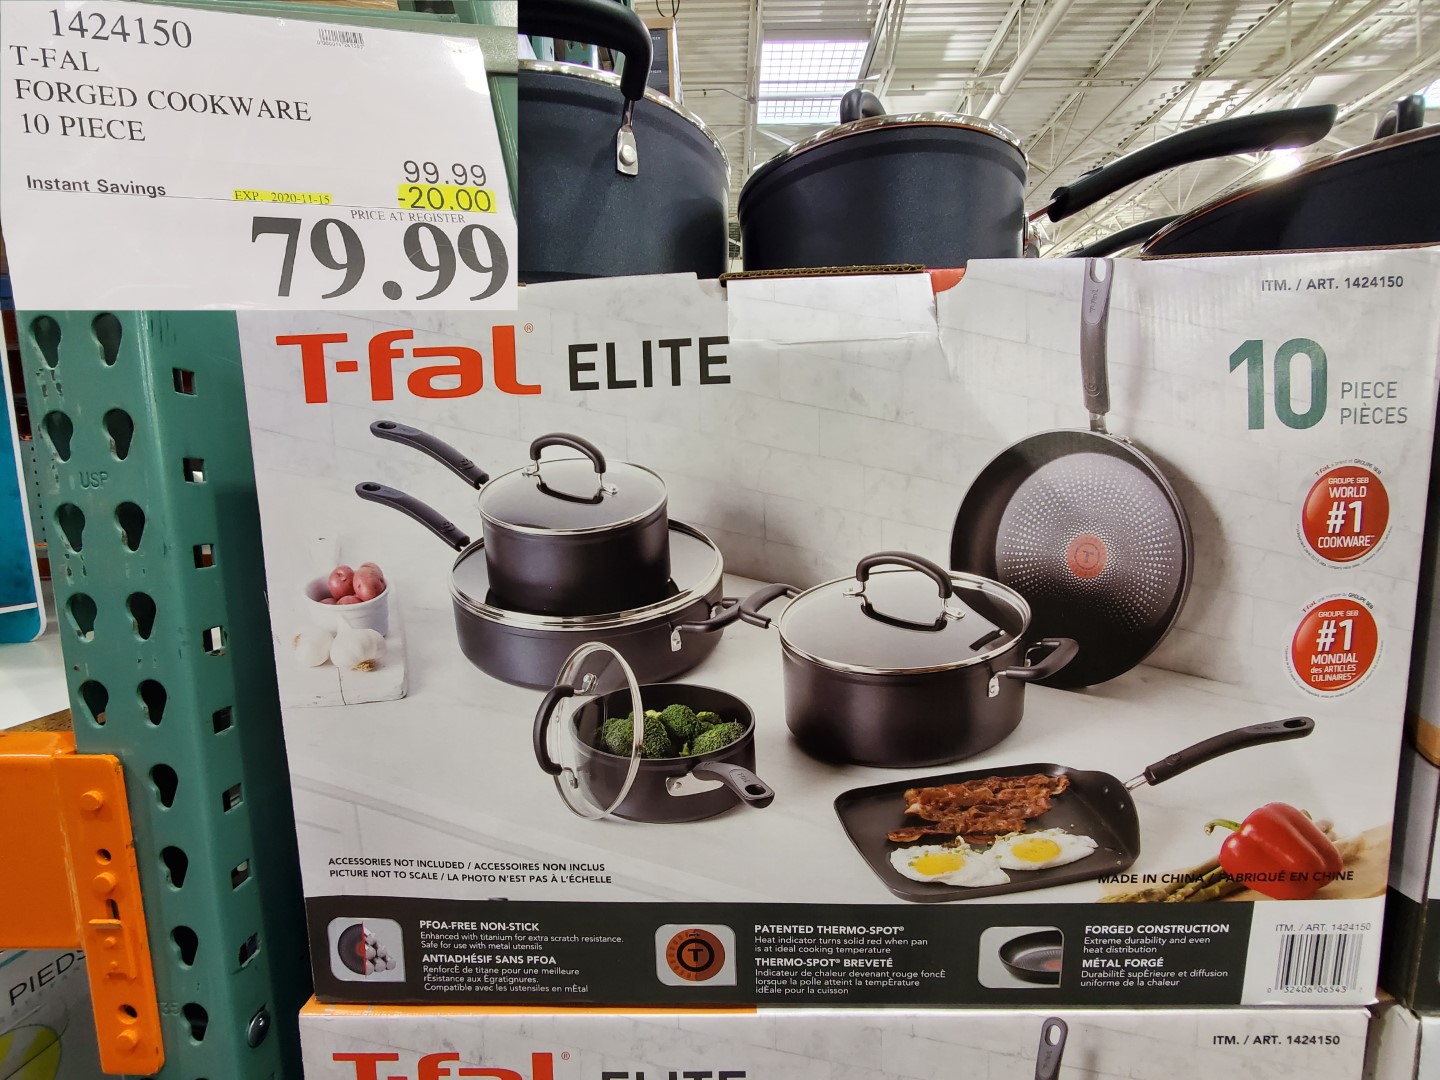 T-fal elite pans